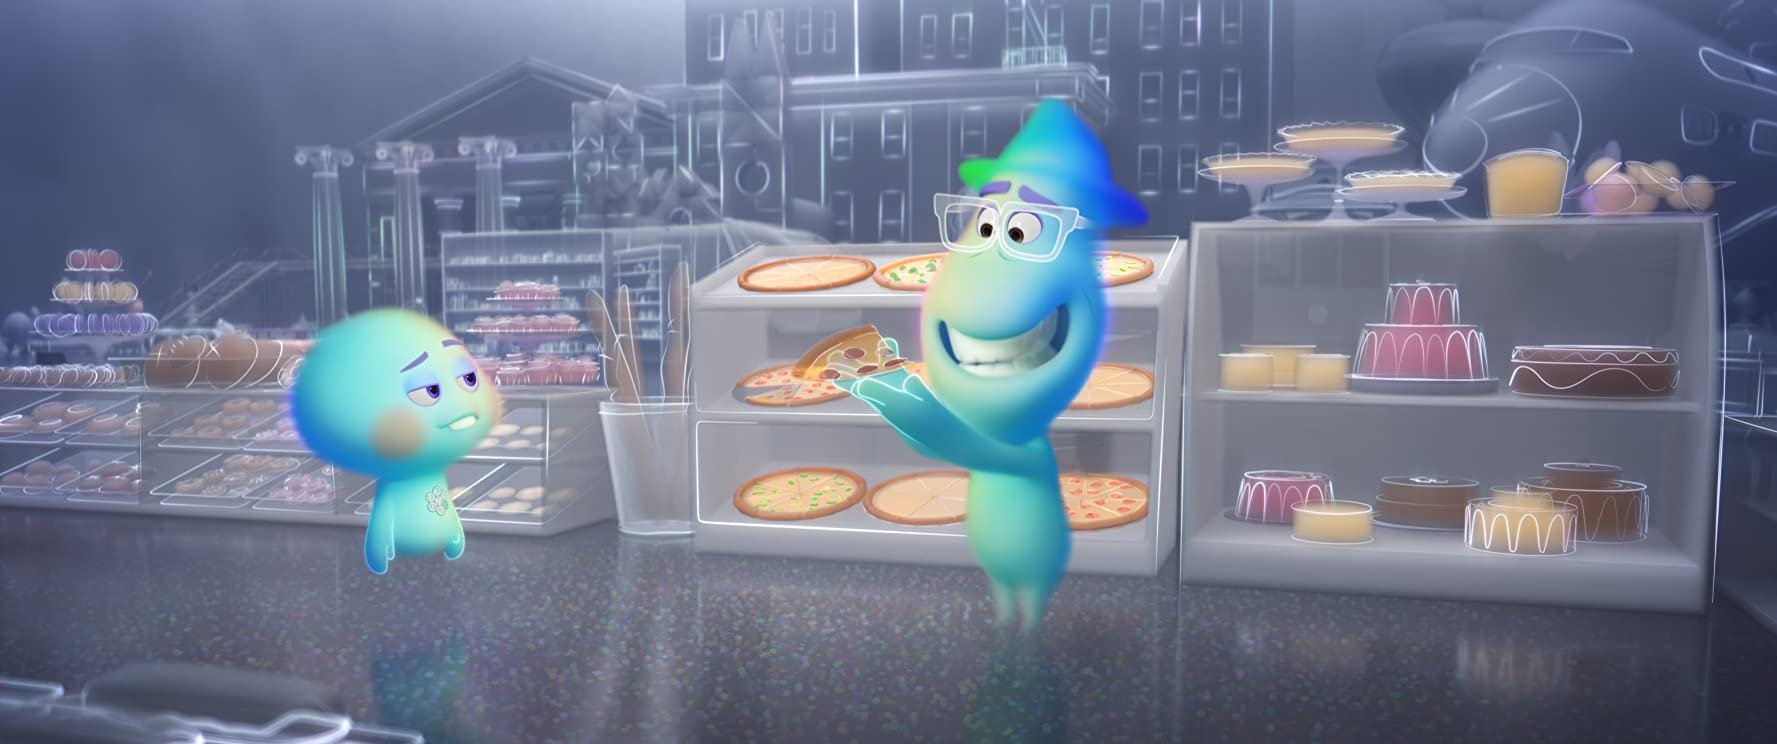 Soul, nova animação da Pixar, deve ser lançada no Disney+.